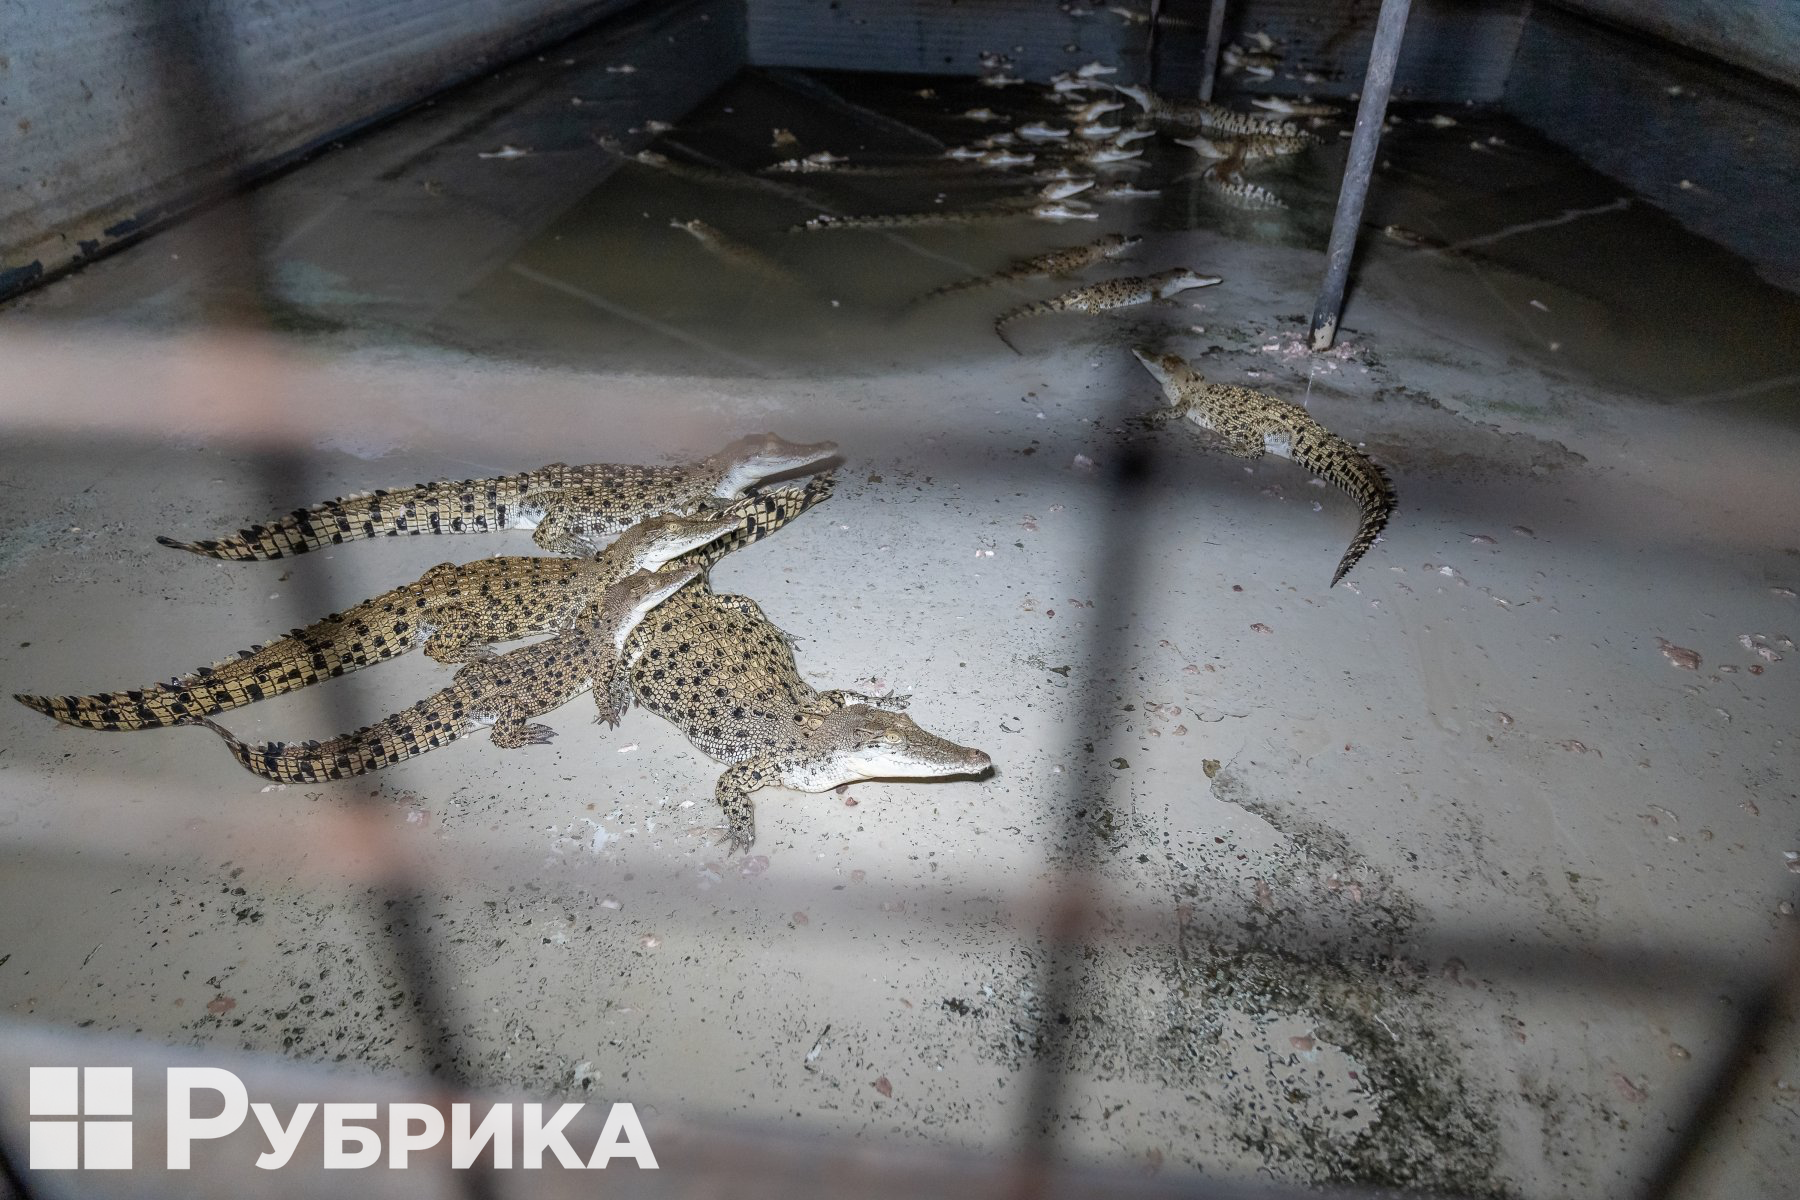 У Варшаві під магазином Louis Vuitton пройшла акція екоактивістів, прясвячена збереженню життя крокодилів